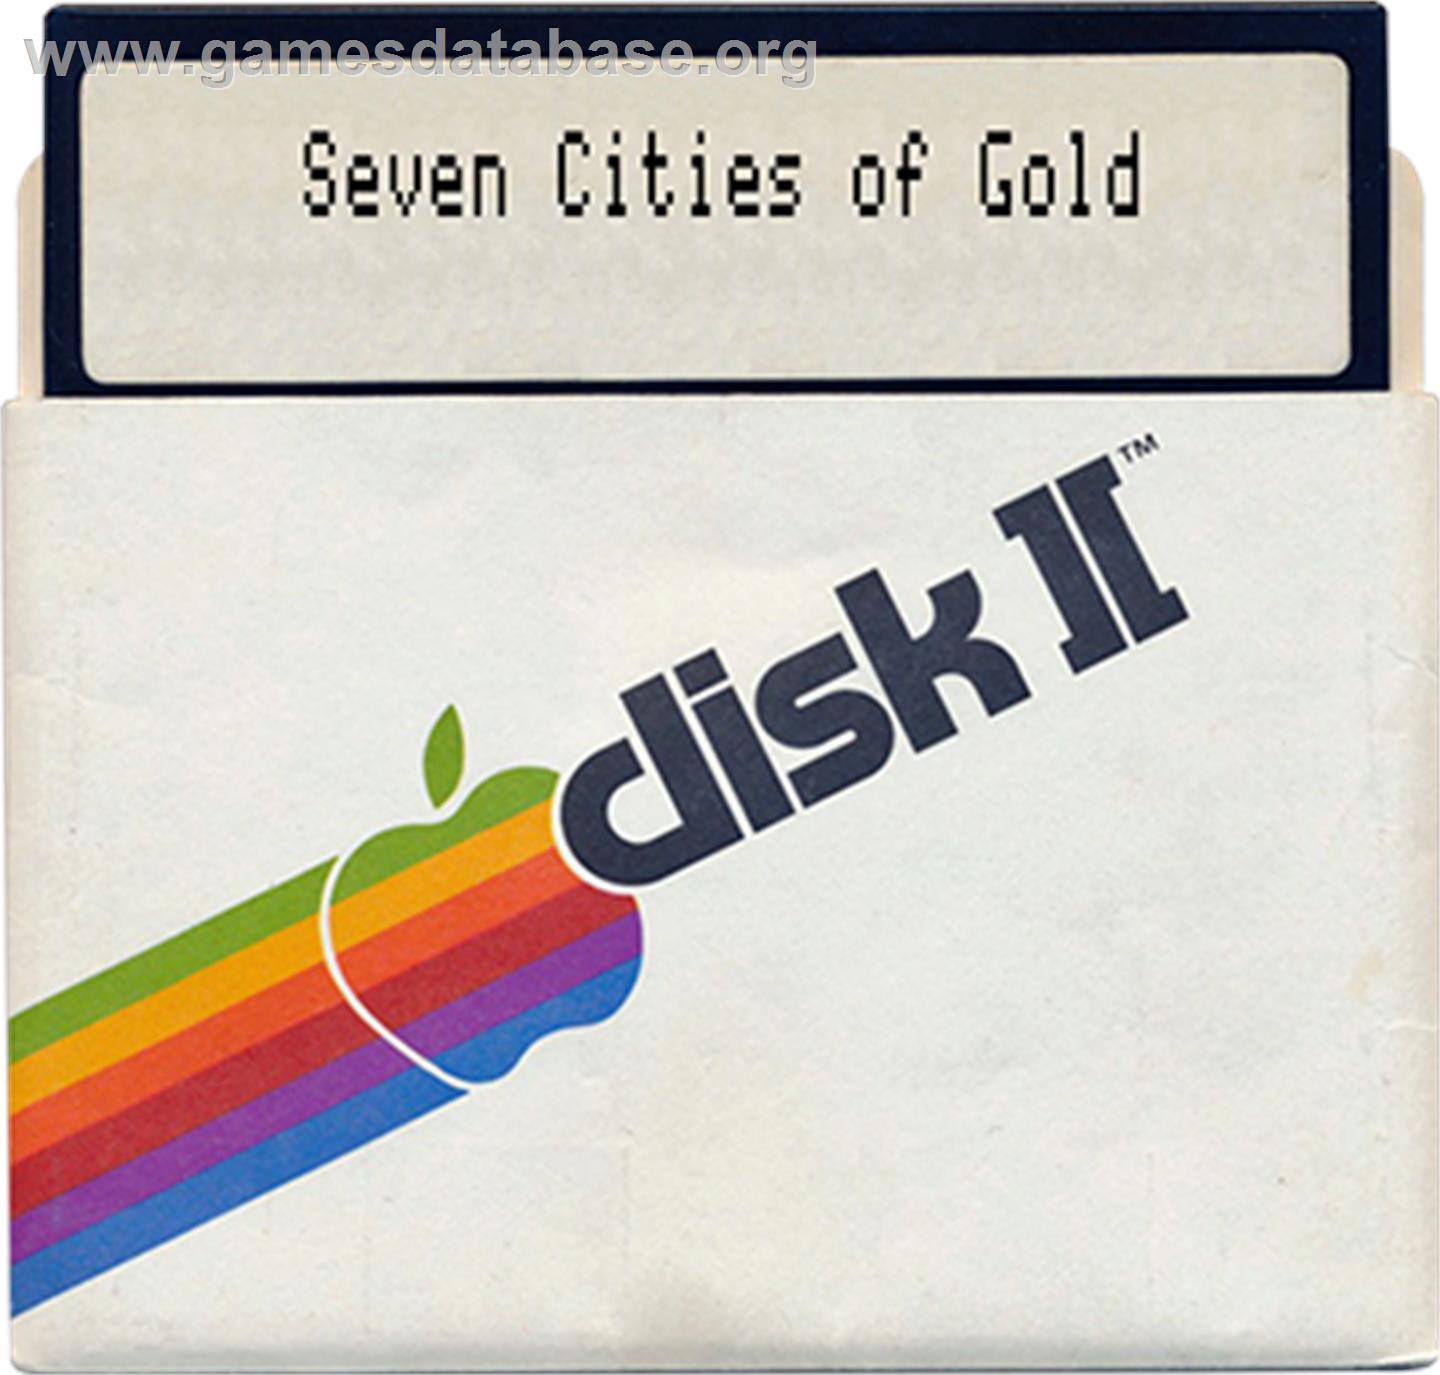 Seven Cities of Gold - Apple II - Artwork - Disc